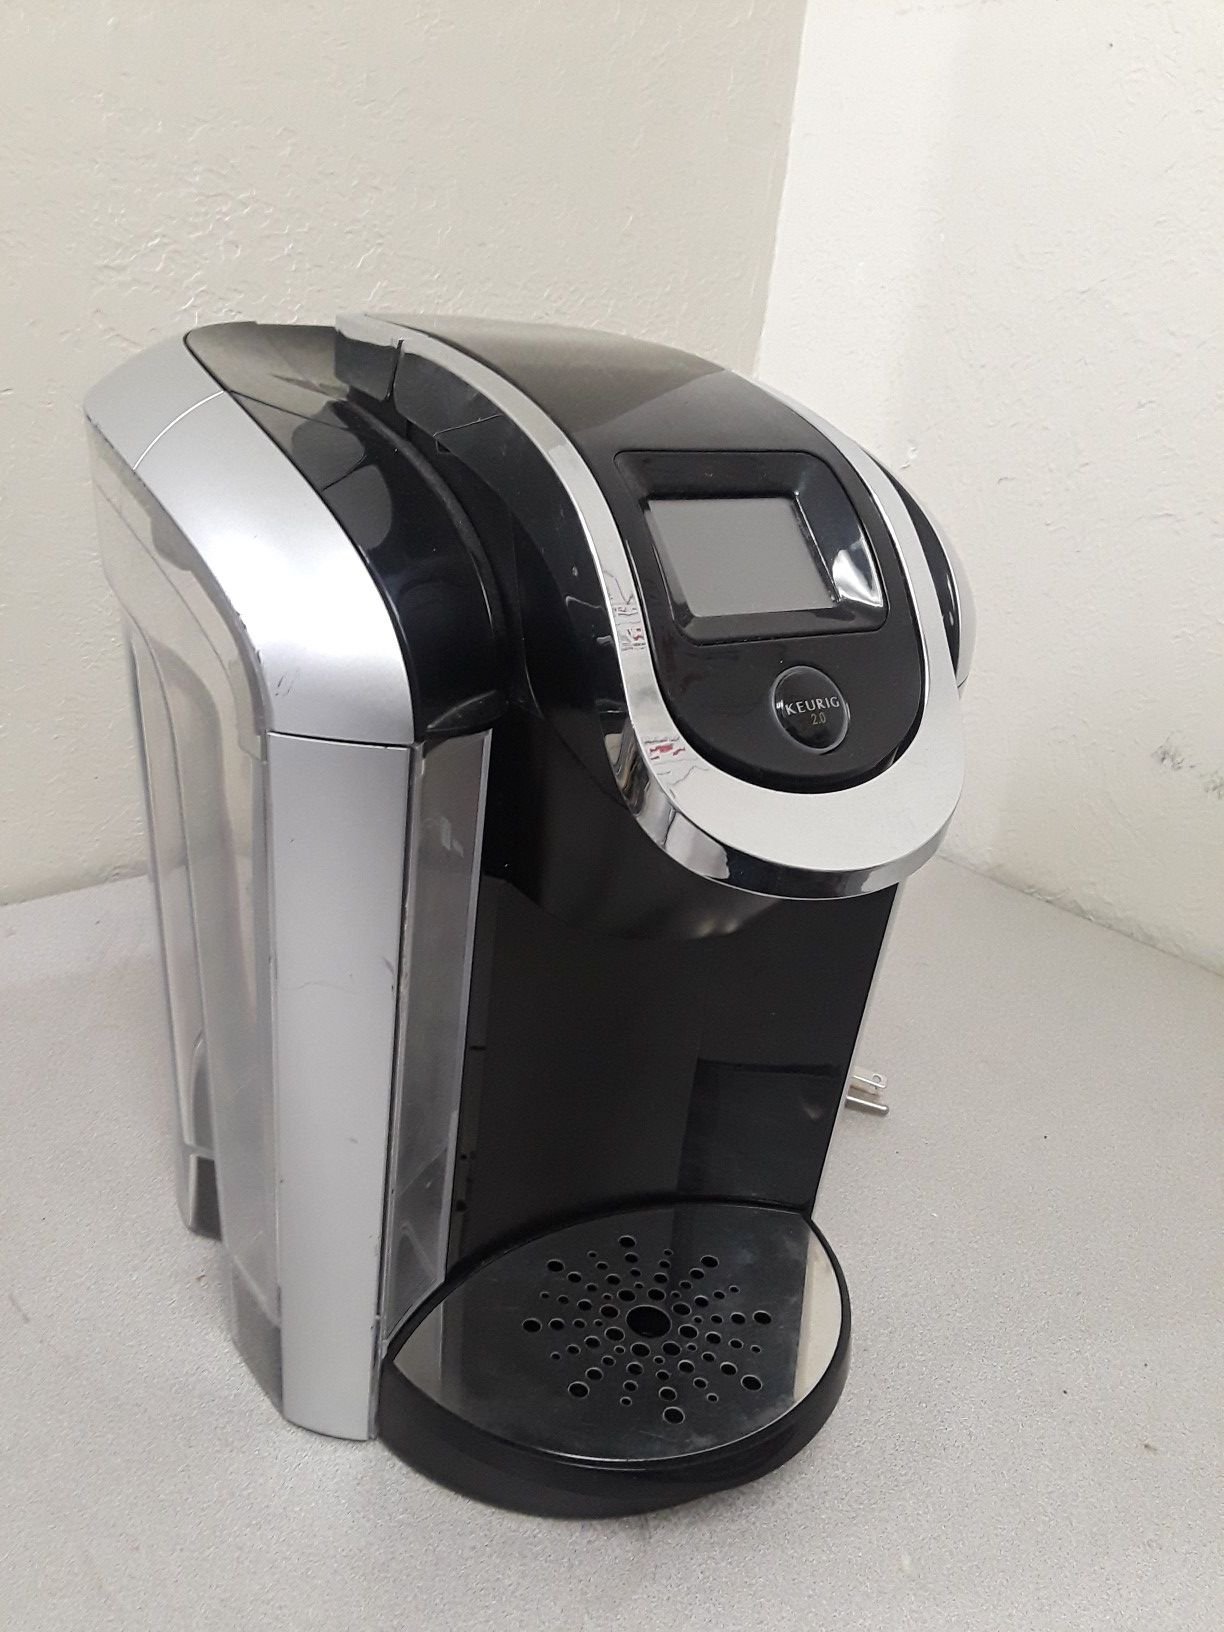 Keurig 2 0 k450 coffee maker